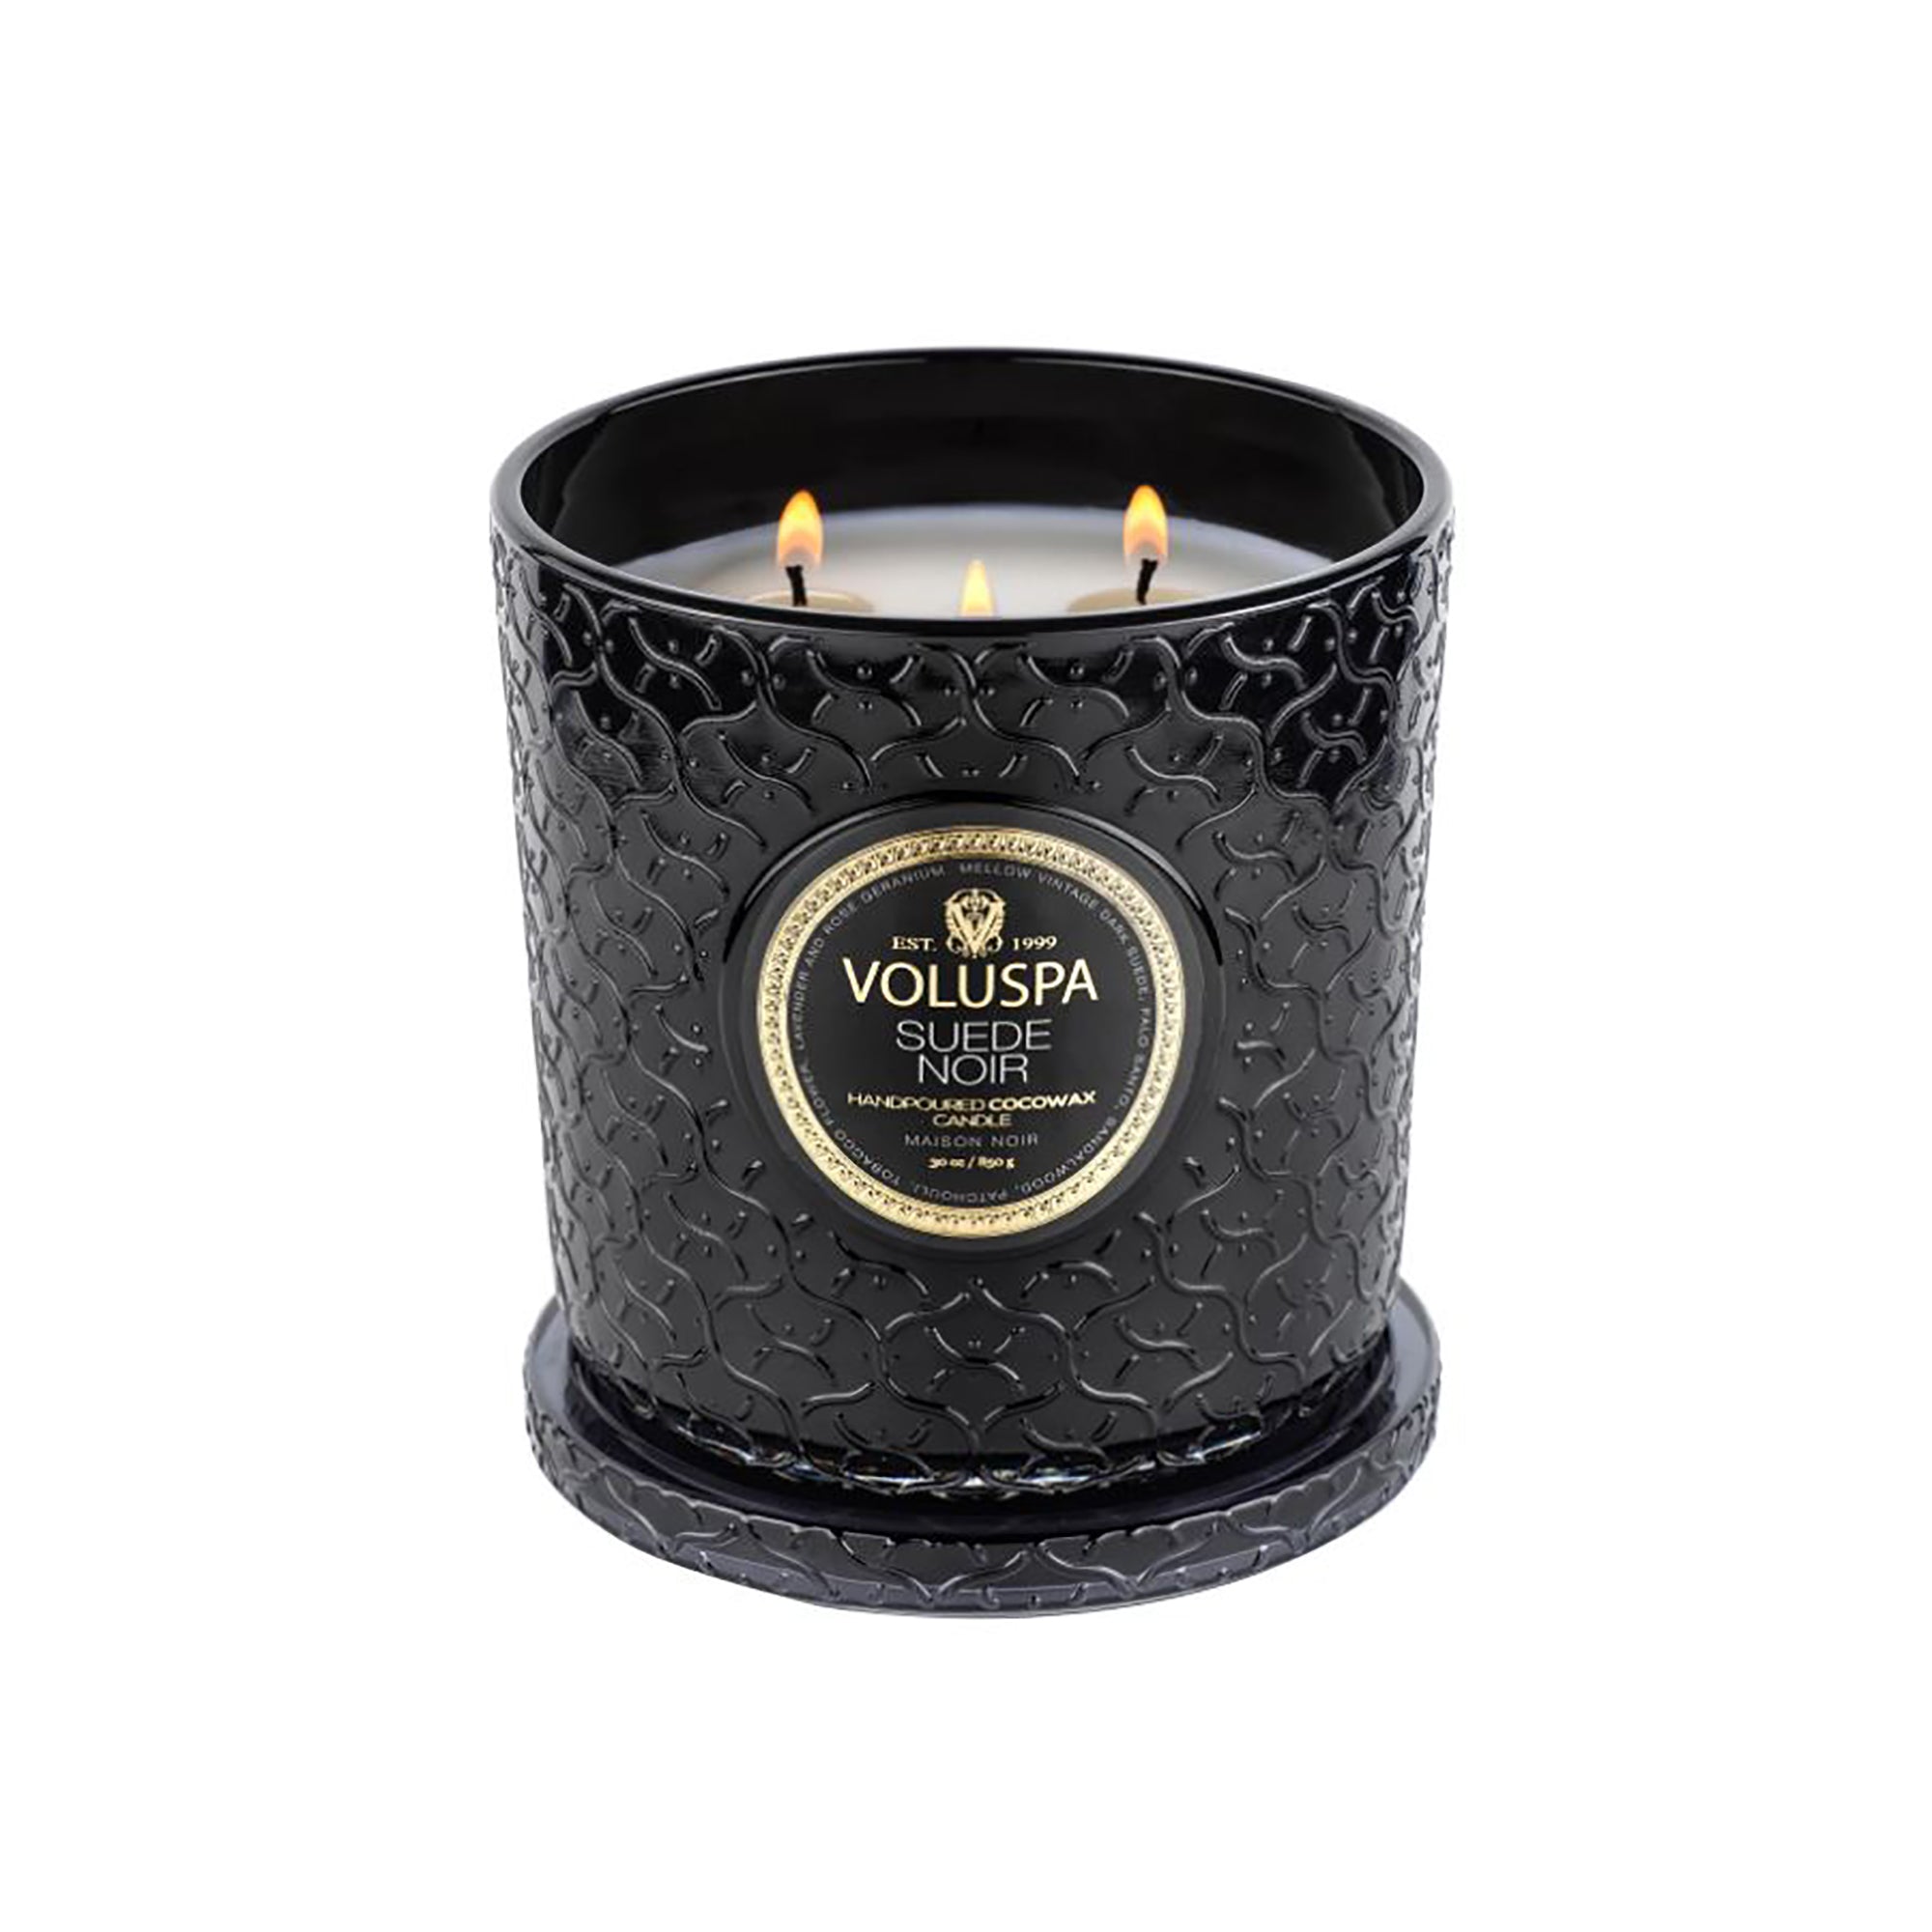  Voluspa Maison Noir Luxe Glass Jar Candle / SUEDE NOIR